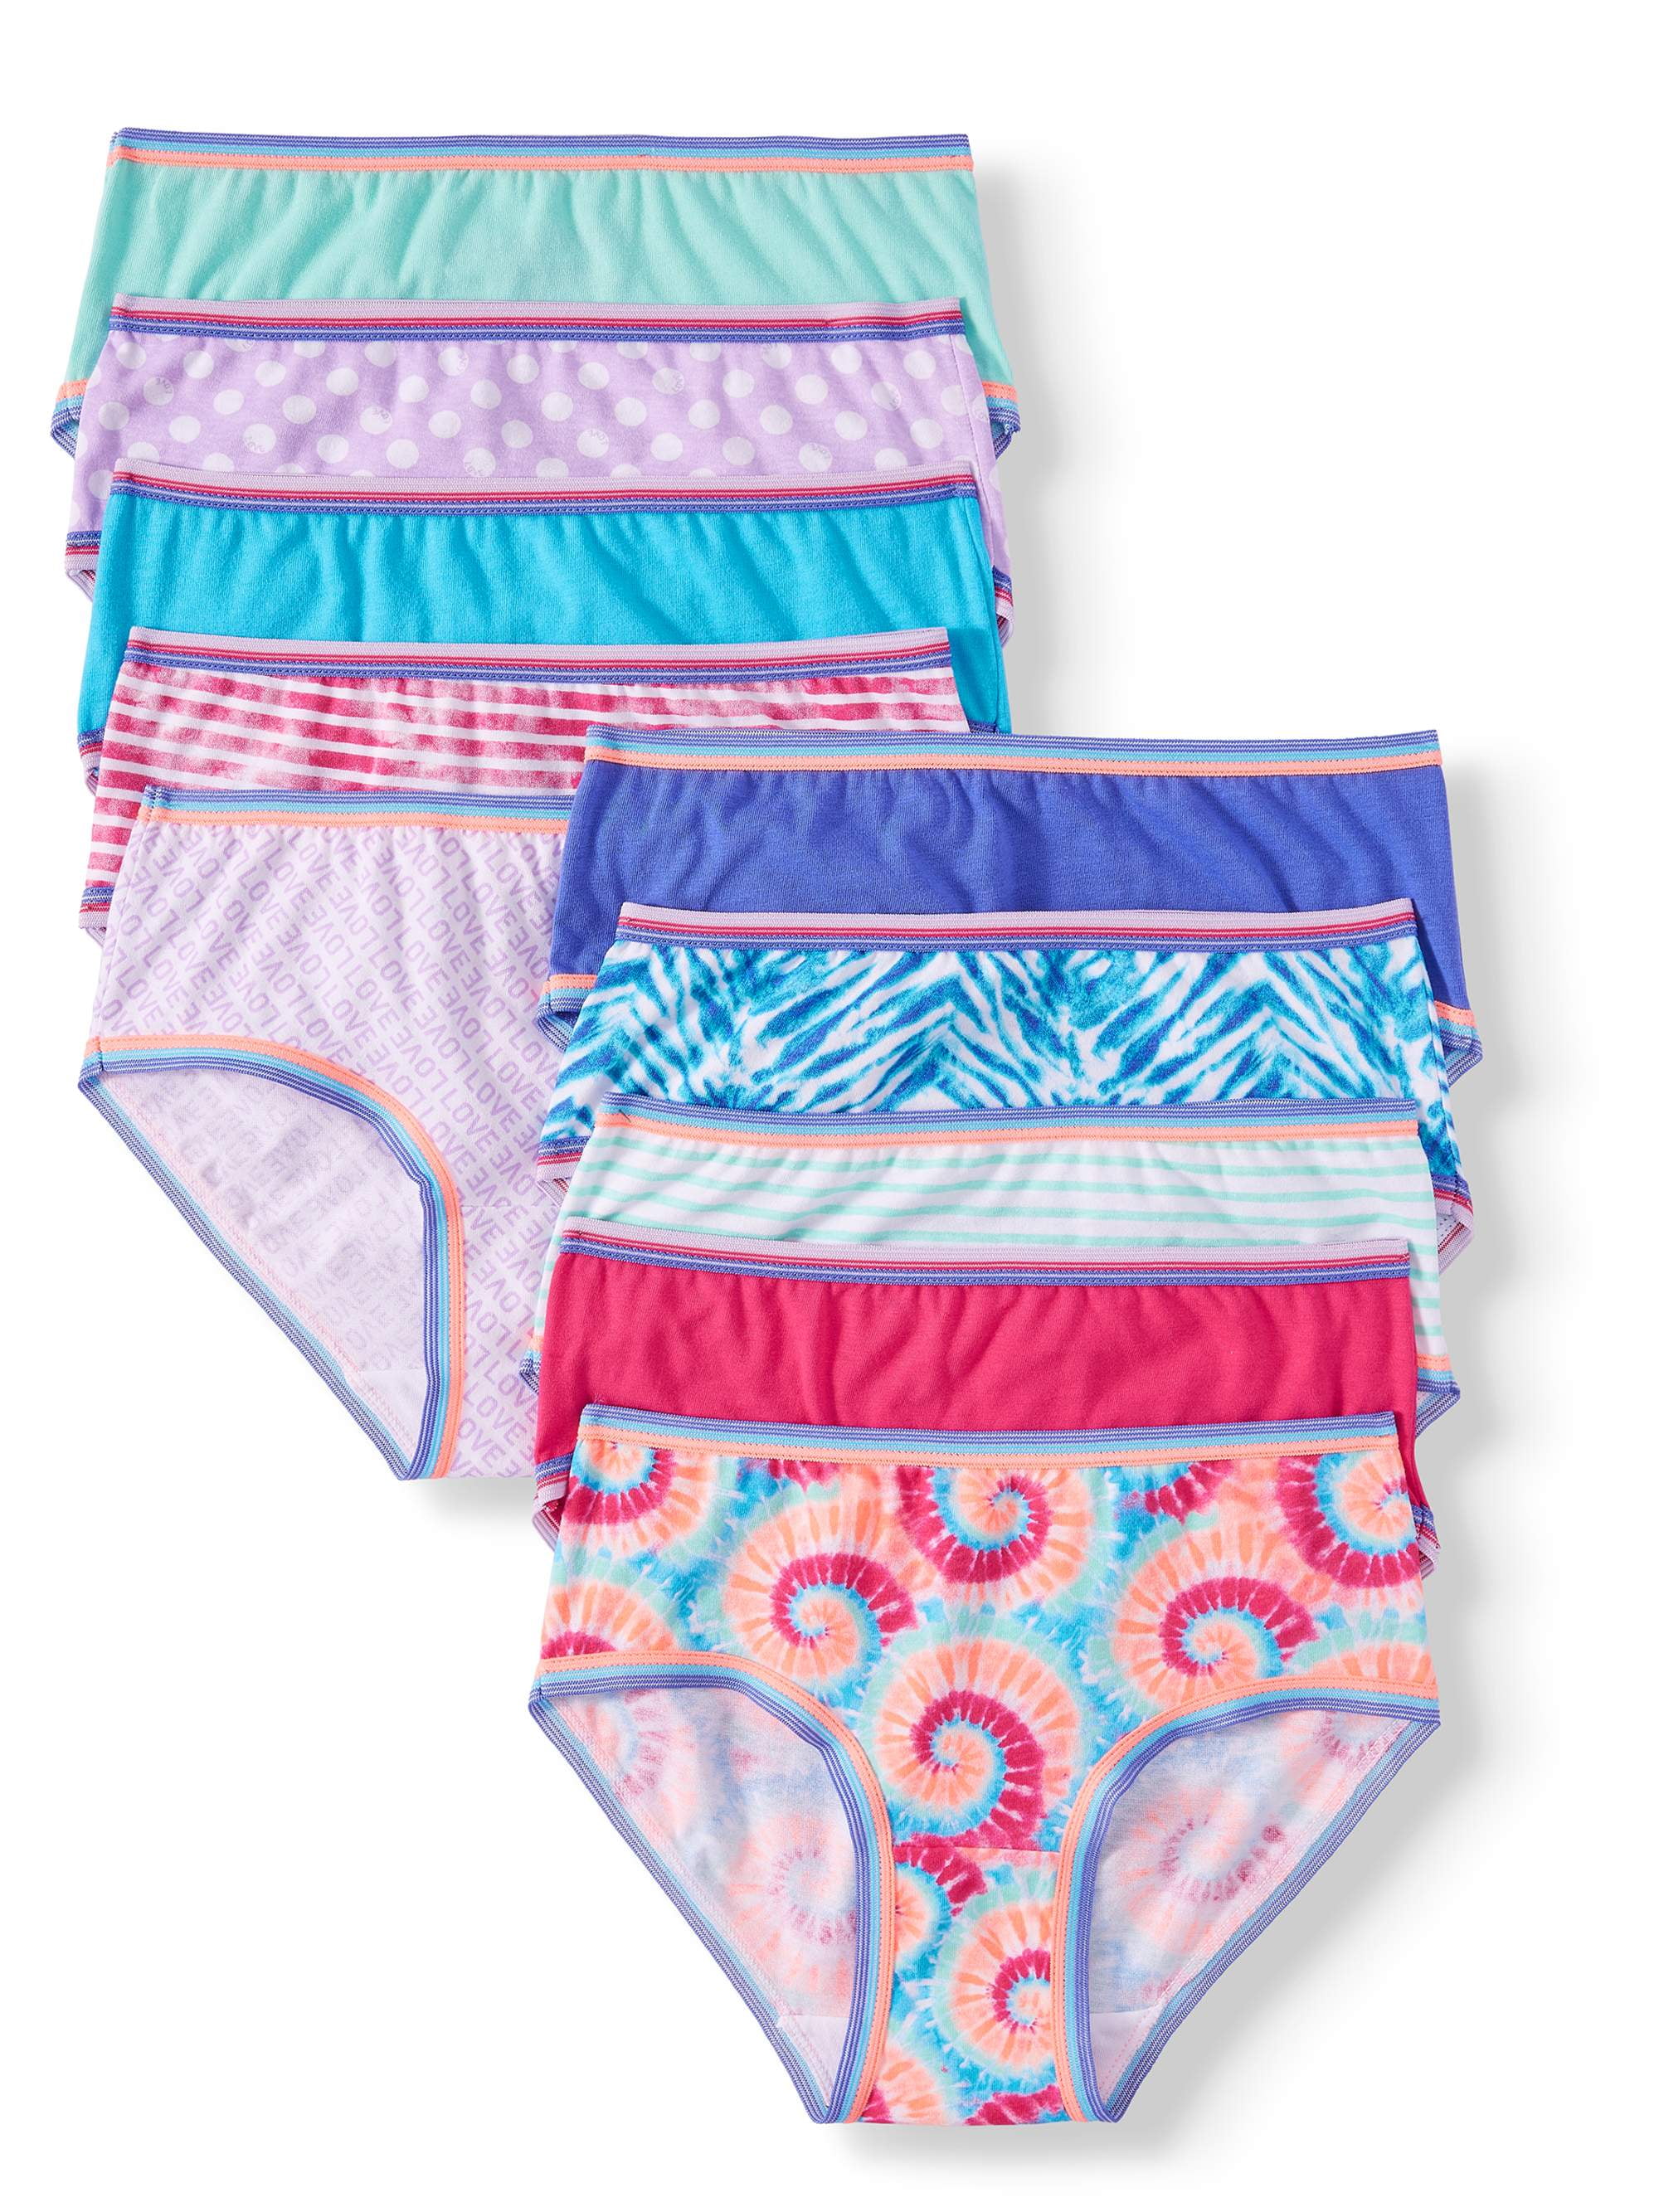 Wonder Nation Girls Brief Underwear 14-Pack, Sizes 4-18 